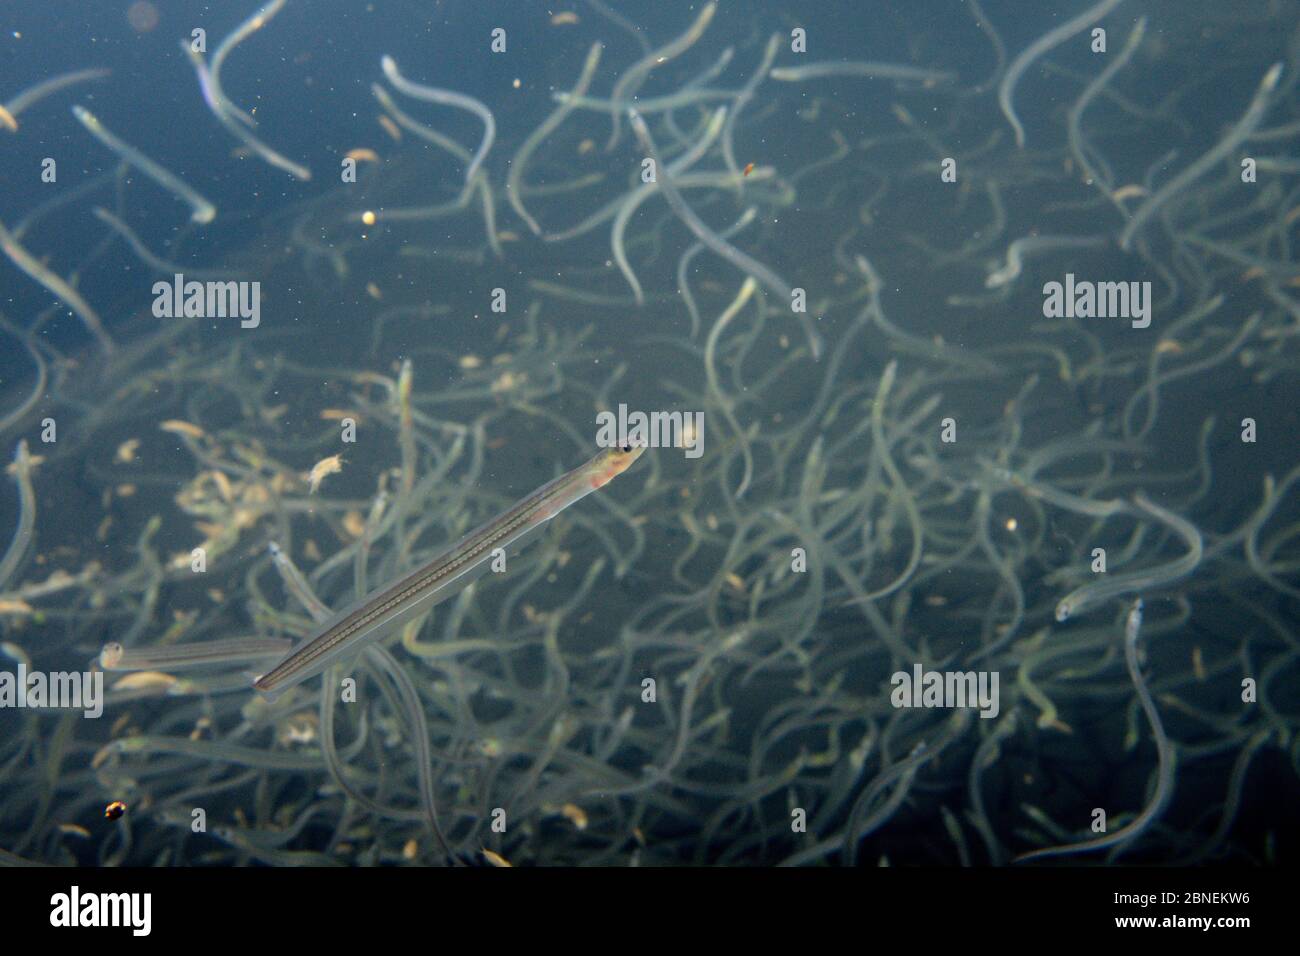 Junge Europäische Aal (Anguilla anguilla) Glasaale, oder Glasaale, die während ihrer jährlichen Migration bis Flüsse aus den Bristol Channel gefangen, Schwimmen in der l Stockfoto